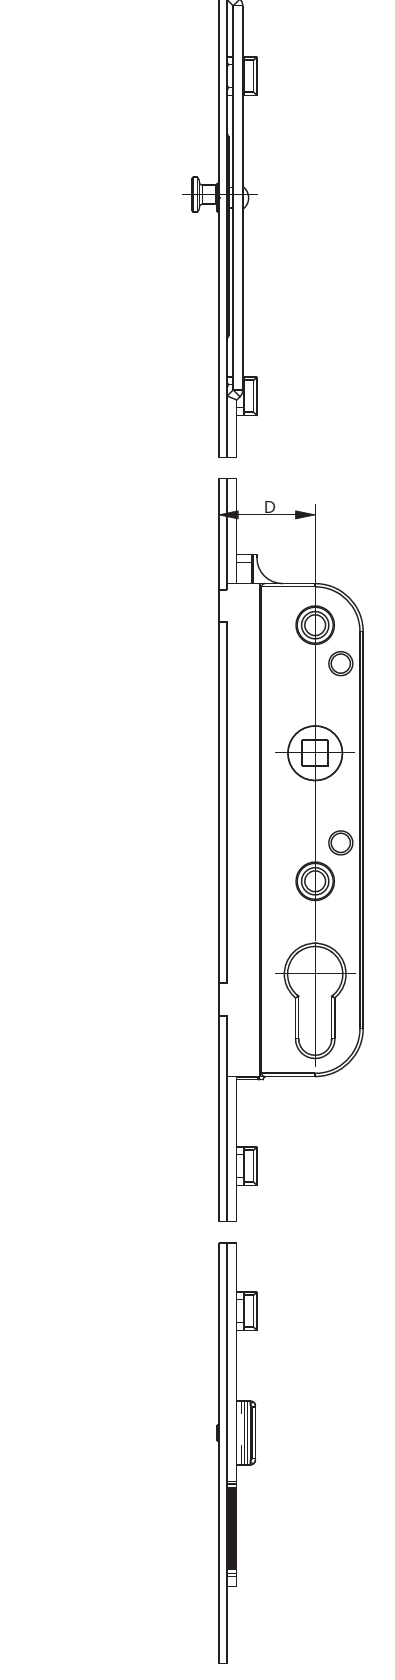 GU-ITALIA -  Cremonese GU-966 per complanare parallelo altezza maniglia fissa con foro cilindro - gr / dim. 1590 - entrata 35 - alt. man. 980 - lbb/hbb 1871 - 2120